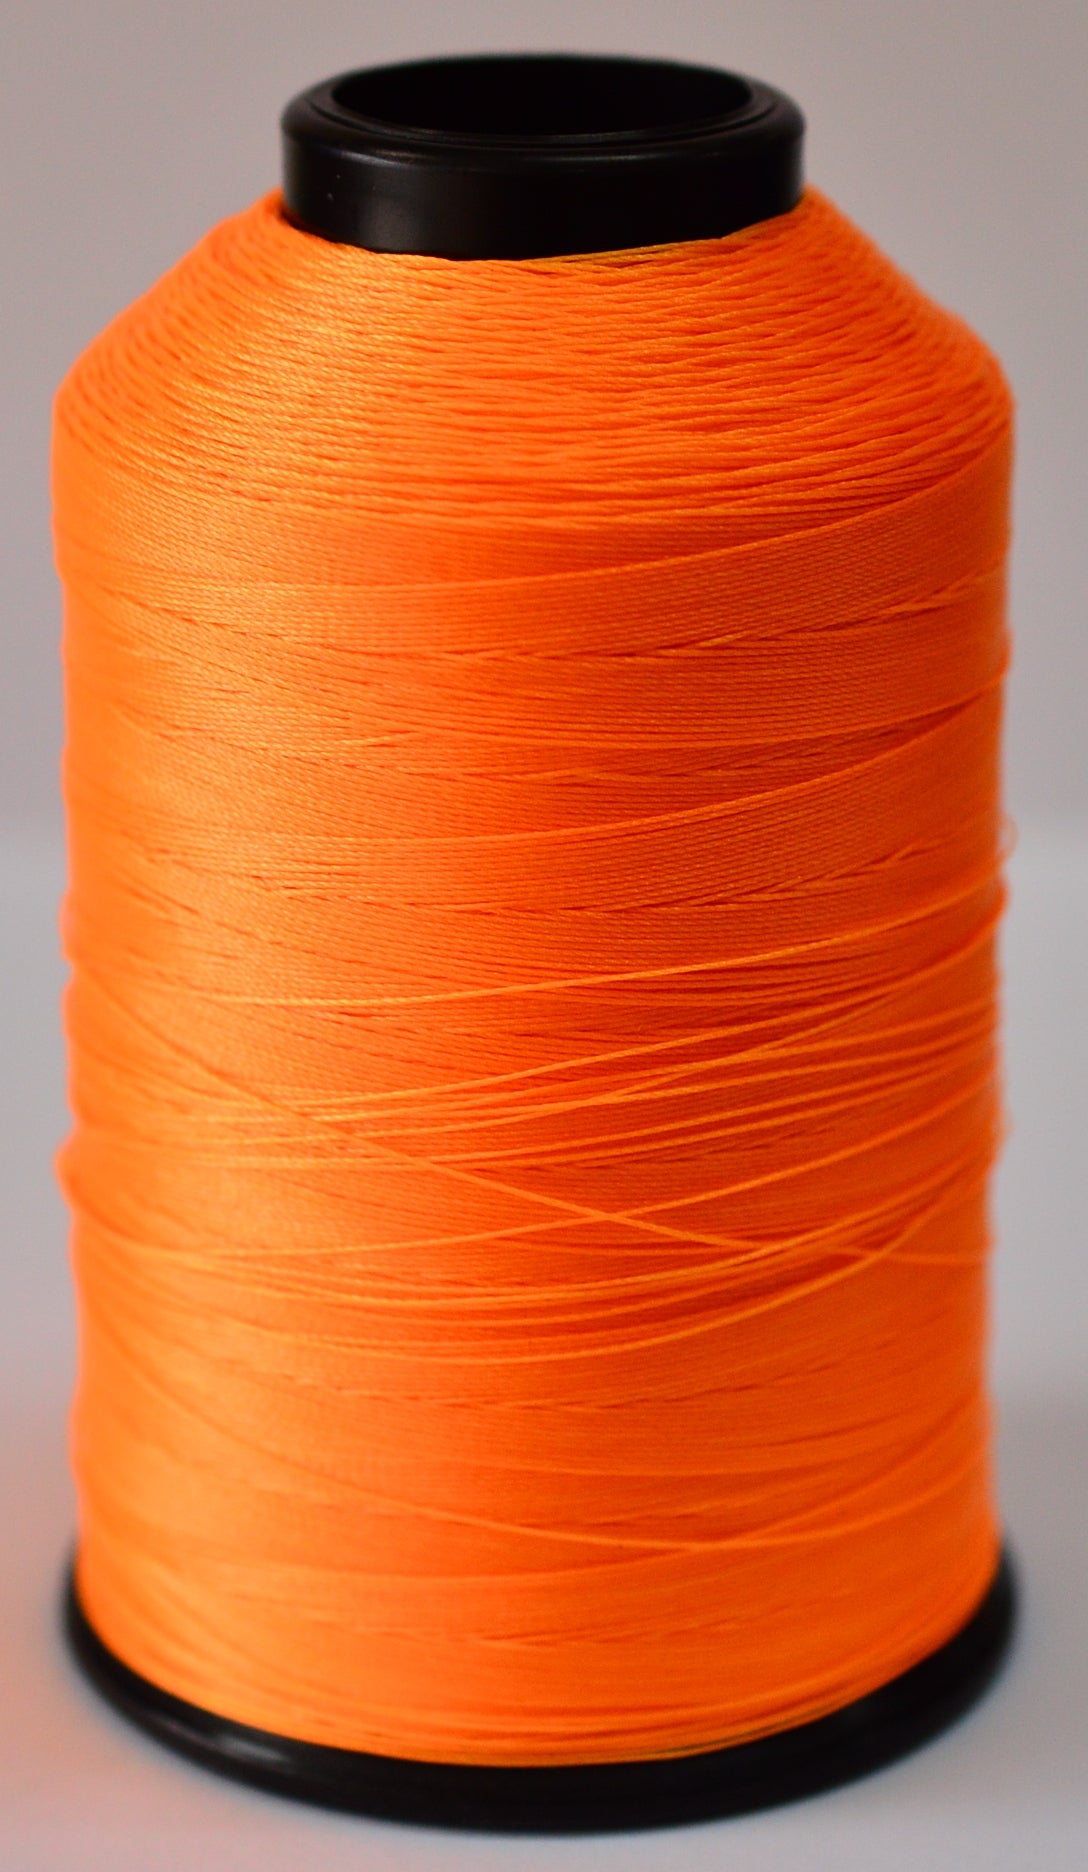 Sobie Upholstery Safety Orange Nylon Thread 4 oz roll